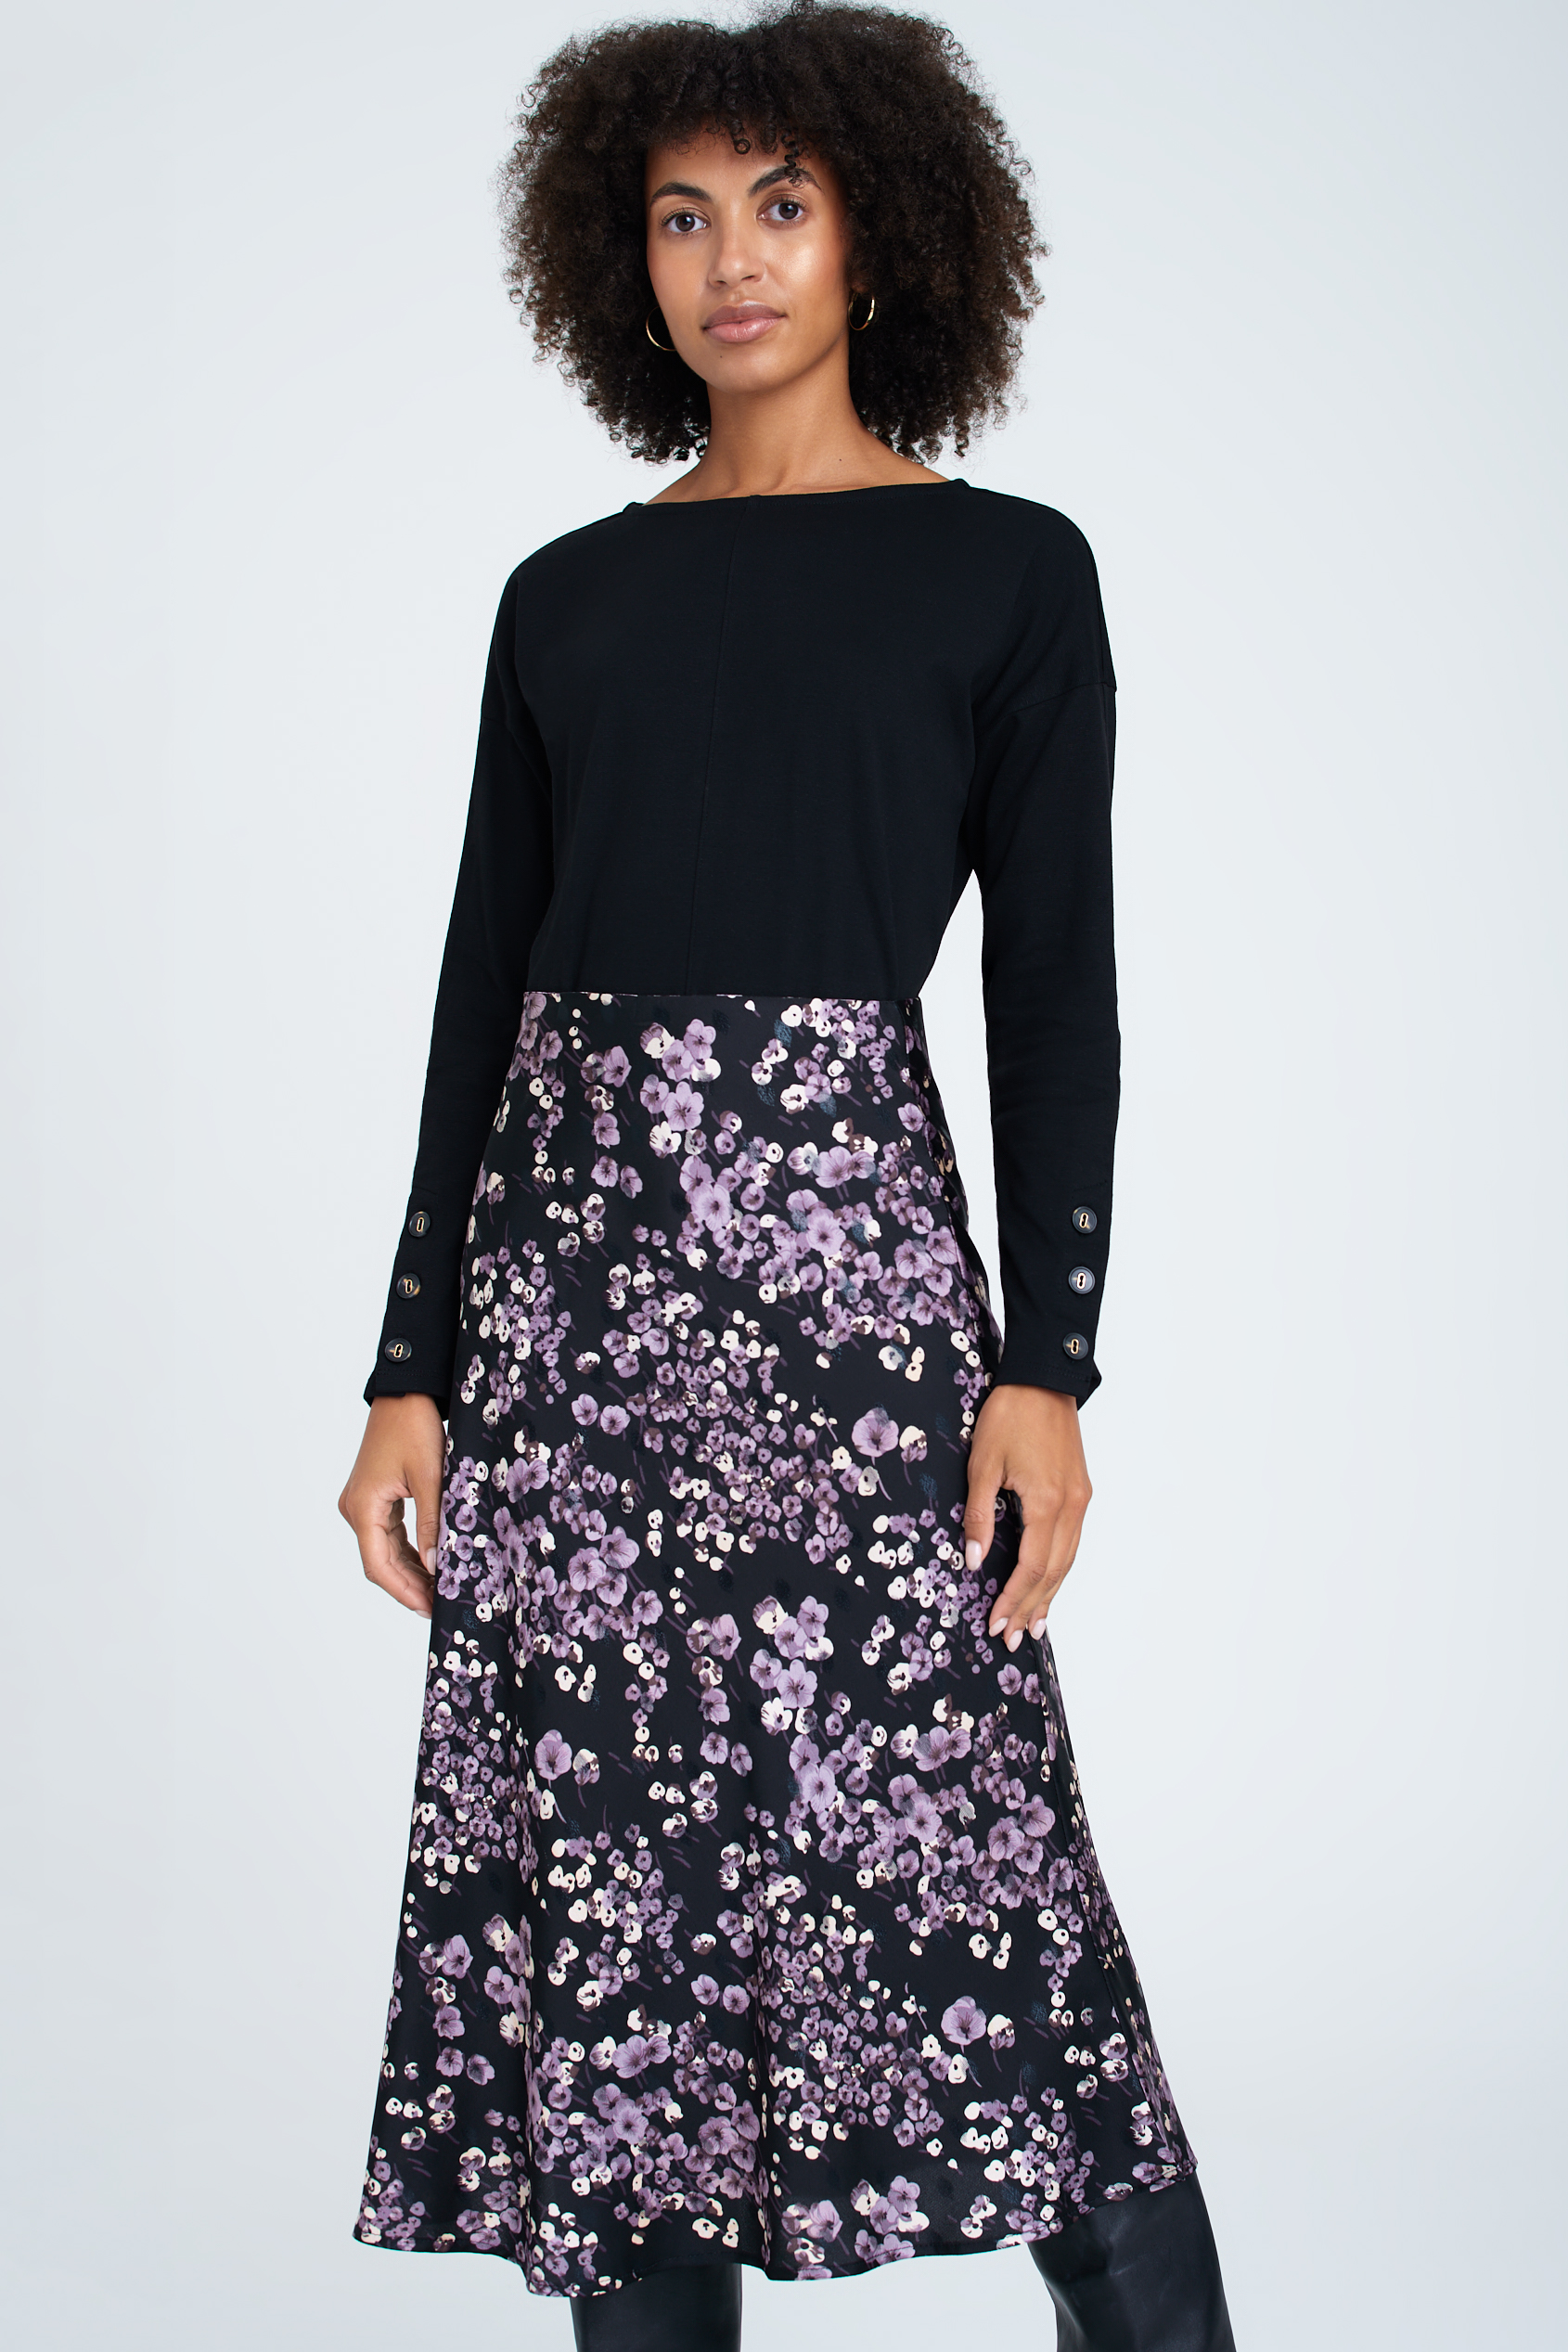 Satynowa spódnica z nadrukiem w drobne kwiaty, czarno-fioletowa